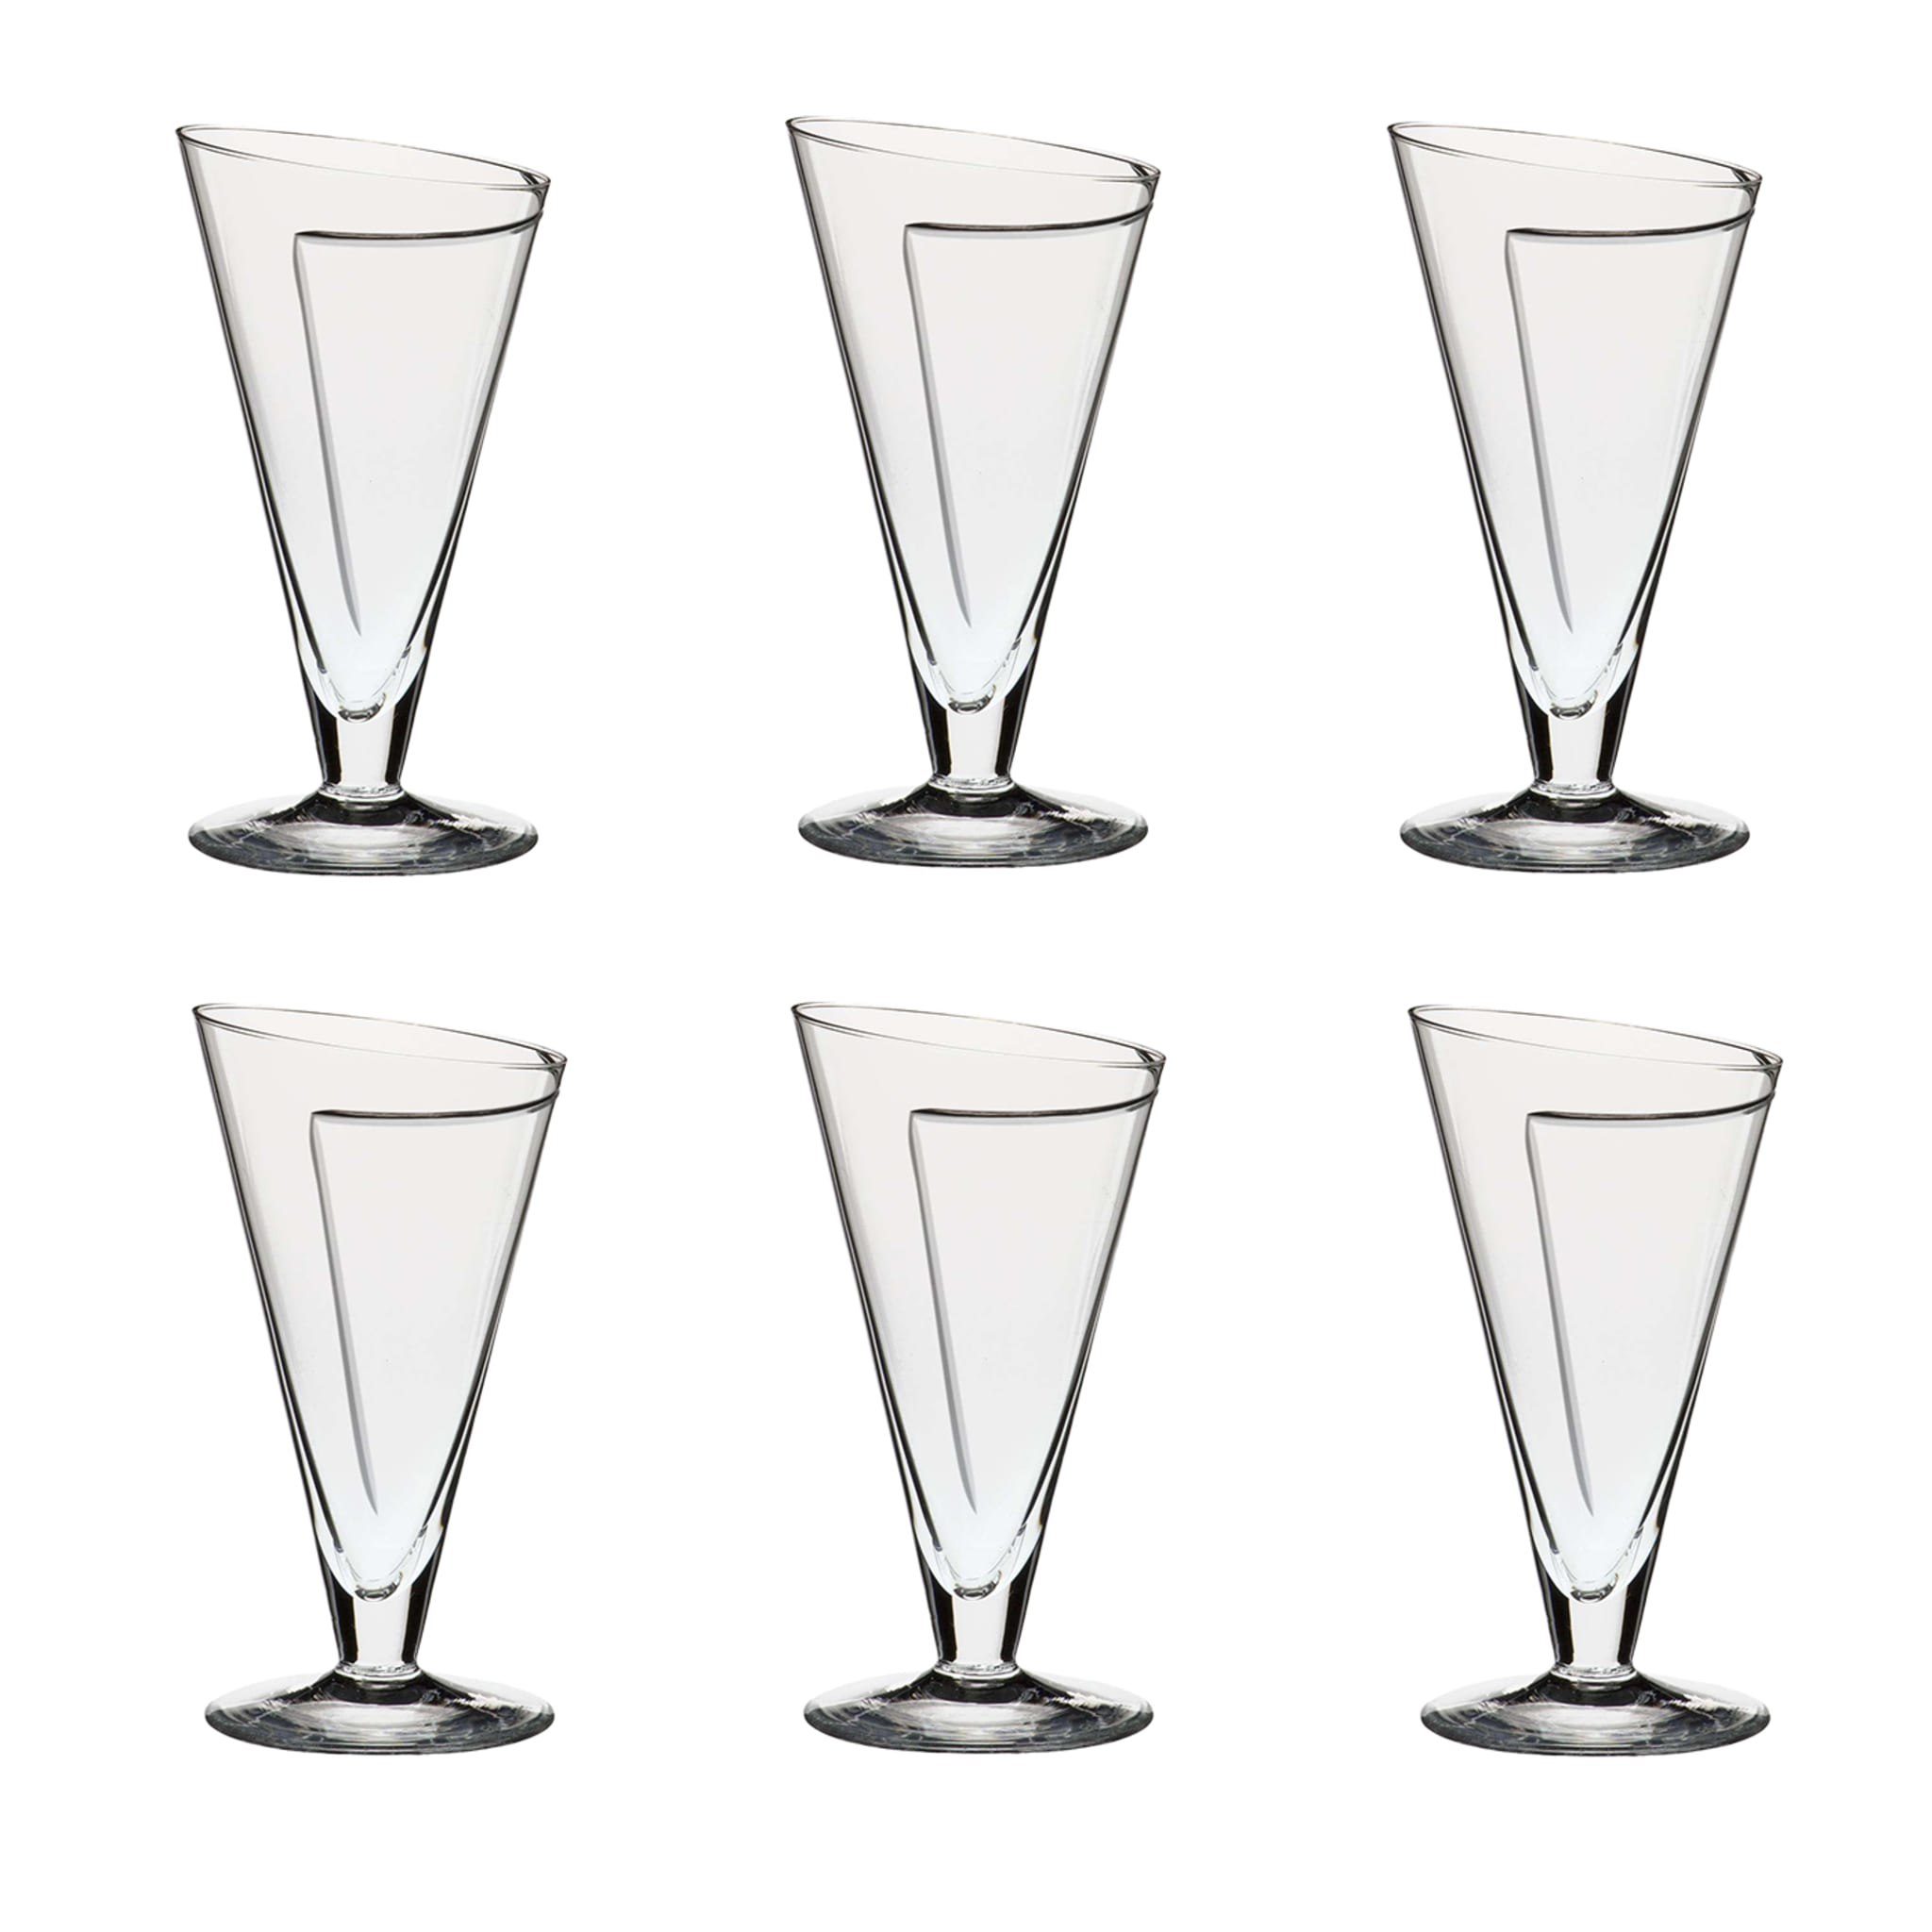 Cartoccio Set of 6 Wine Glasses - Alternative view 1